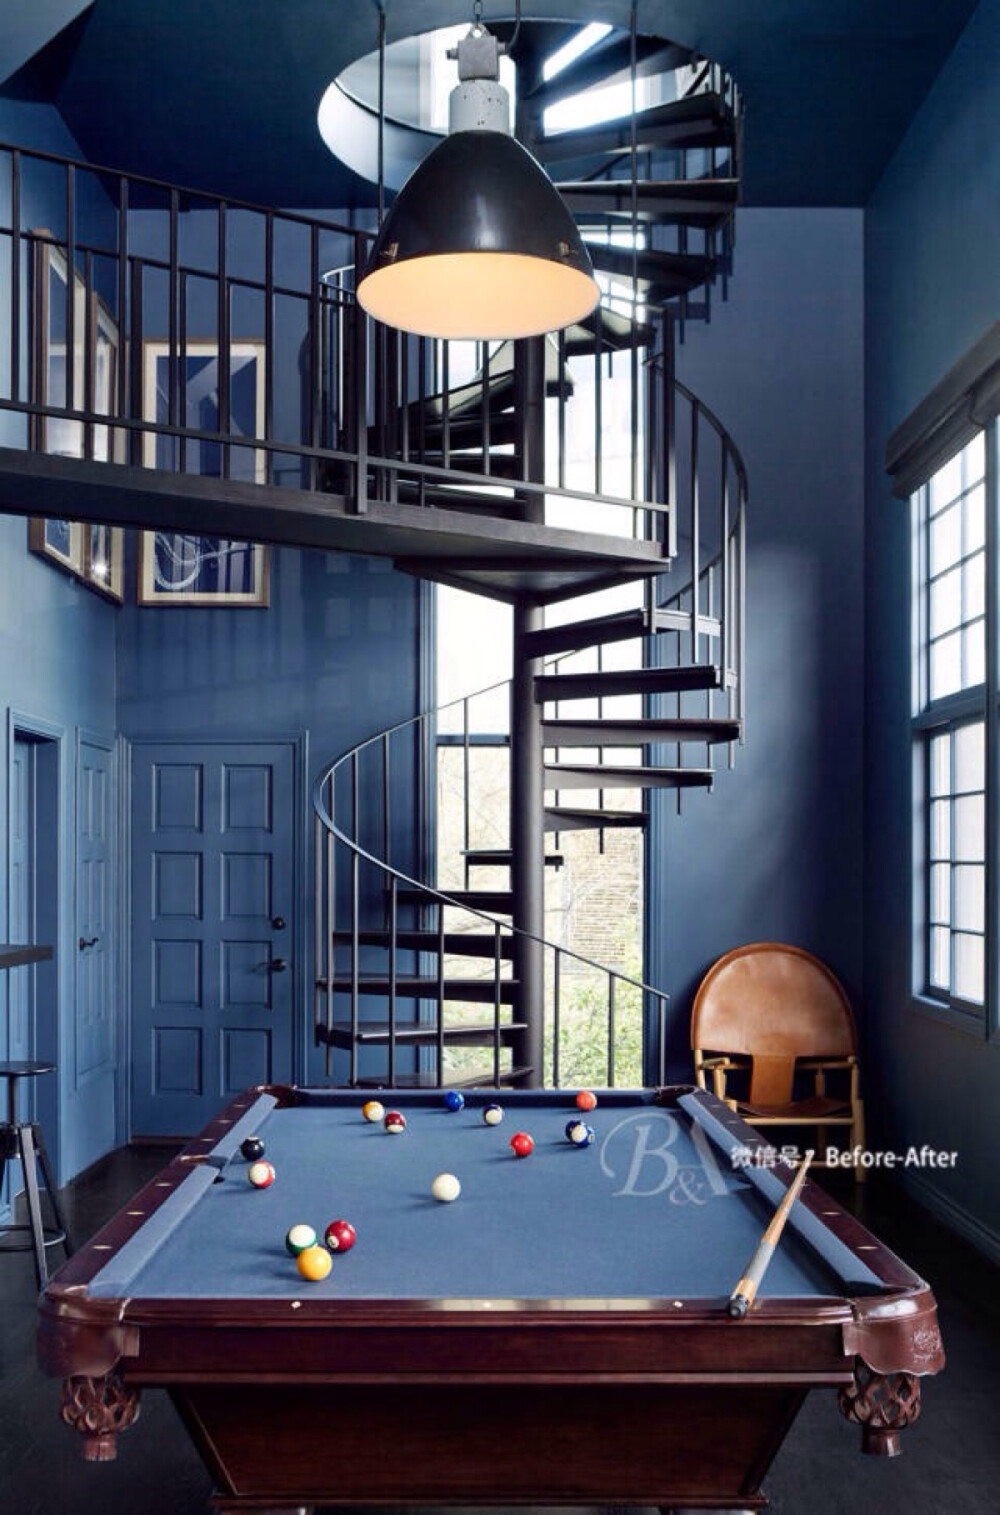 当从上至下的黑色铁艺楼梯贯穿整个空间，蓝色的墙面就像一个幕布，整个空间就像电影场景那般，留给人的是经典与不凡格调。